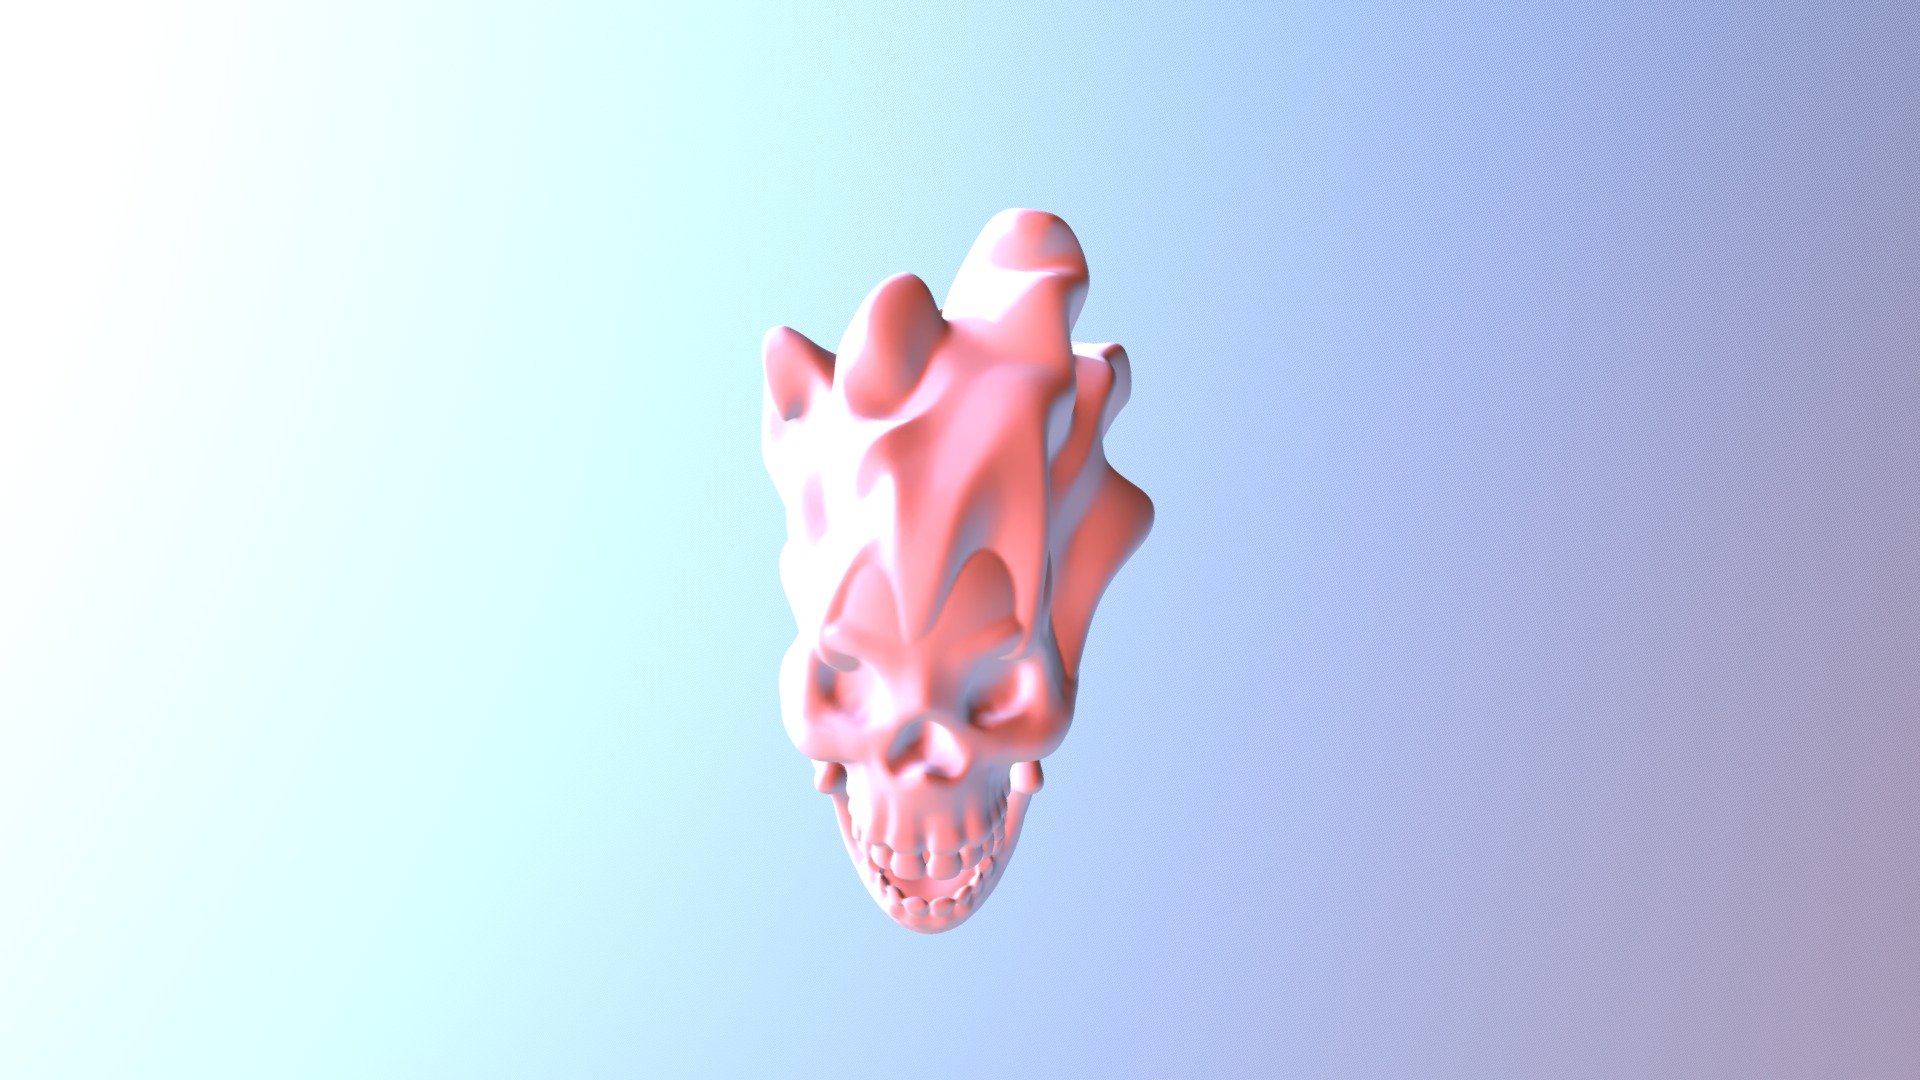 Flameskull - 3D model by Justin (@justinc) 3d model